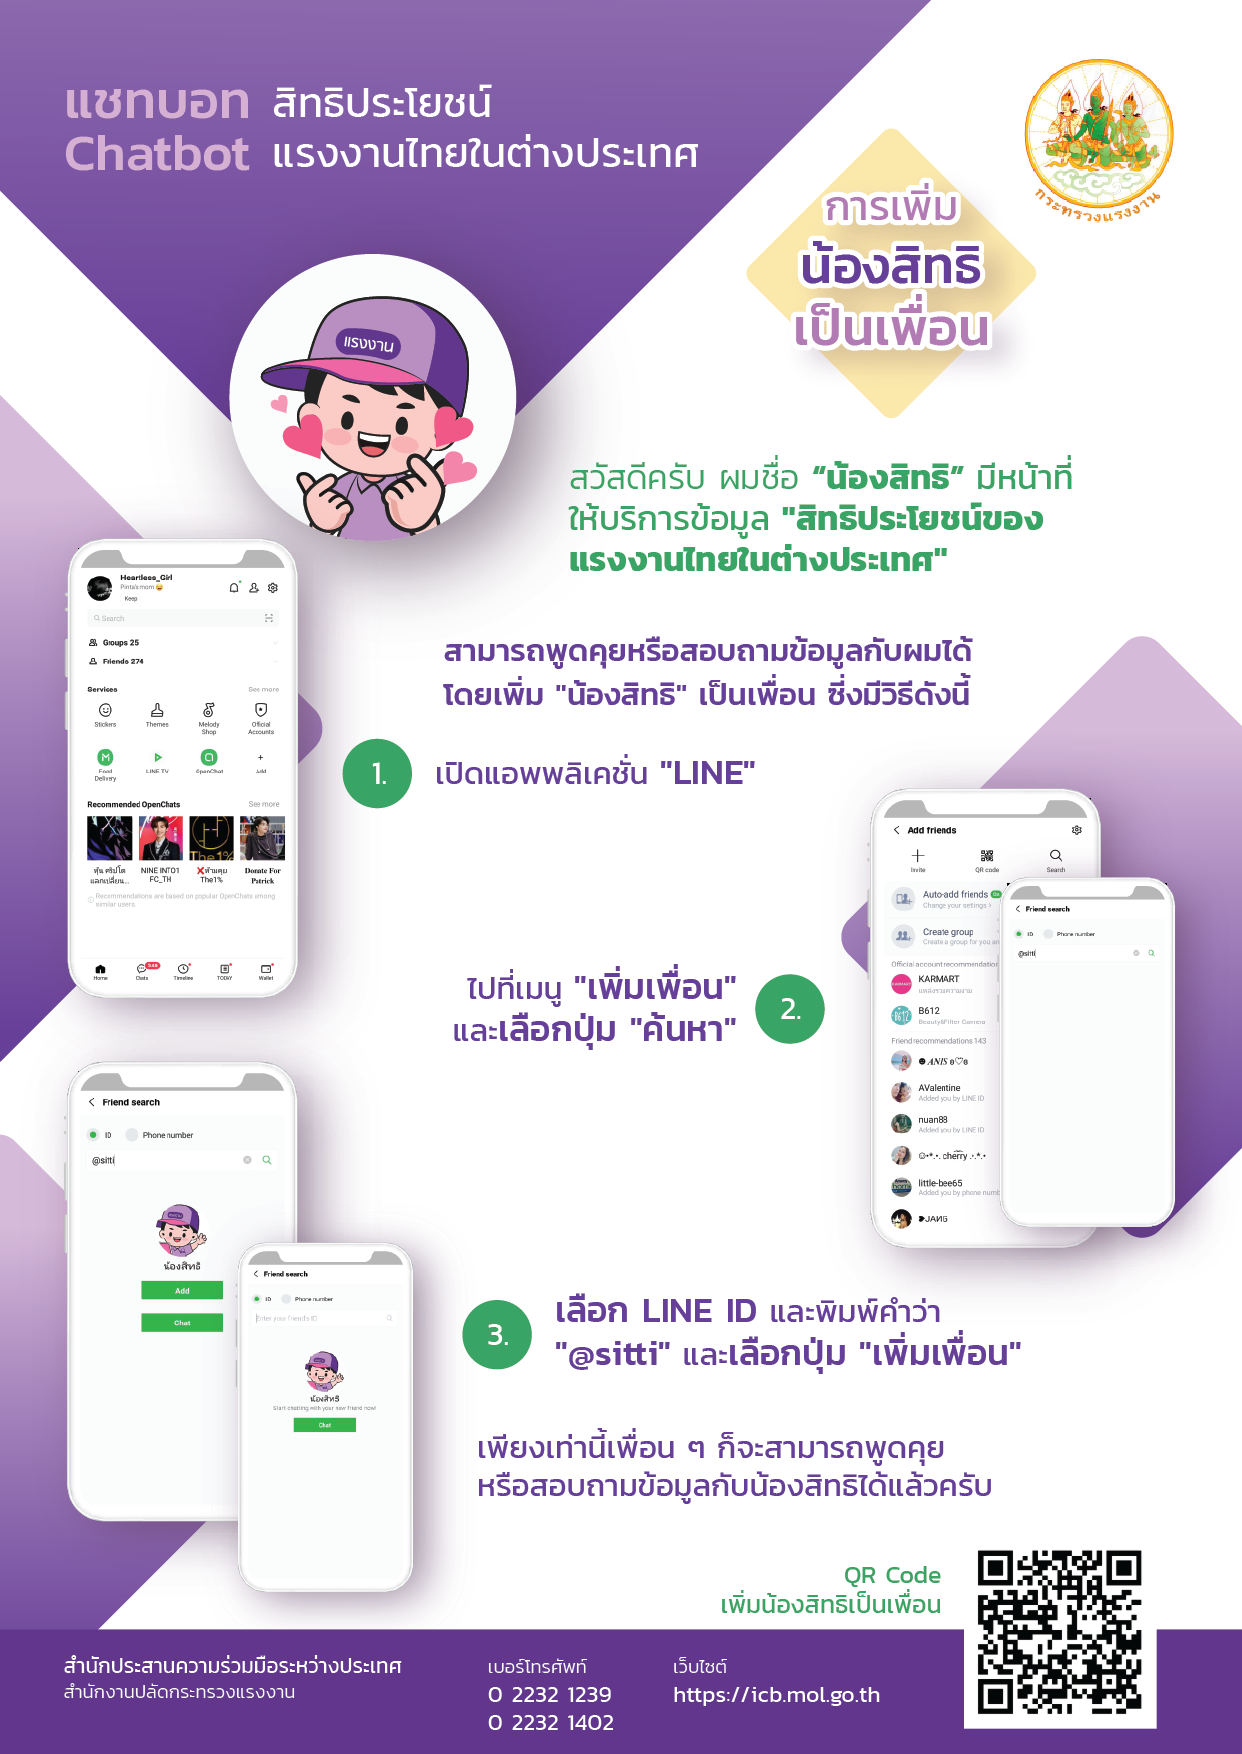 น้องสิทธิ_ระบบ_Line_Official_ตอบข้อมูลสิทธิประโยชน์แรงงานไทยในต่างประเทศแบบอัตโนมัติ_1